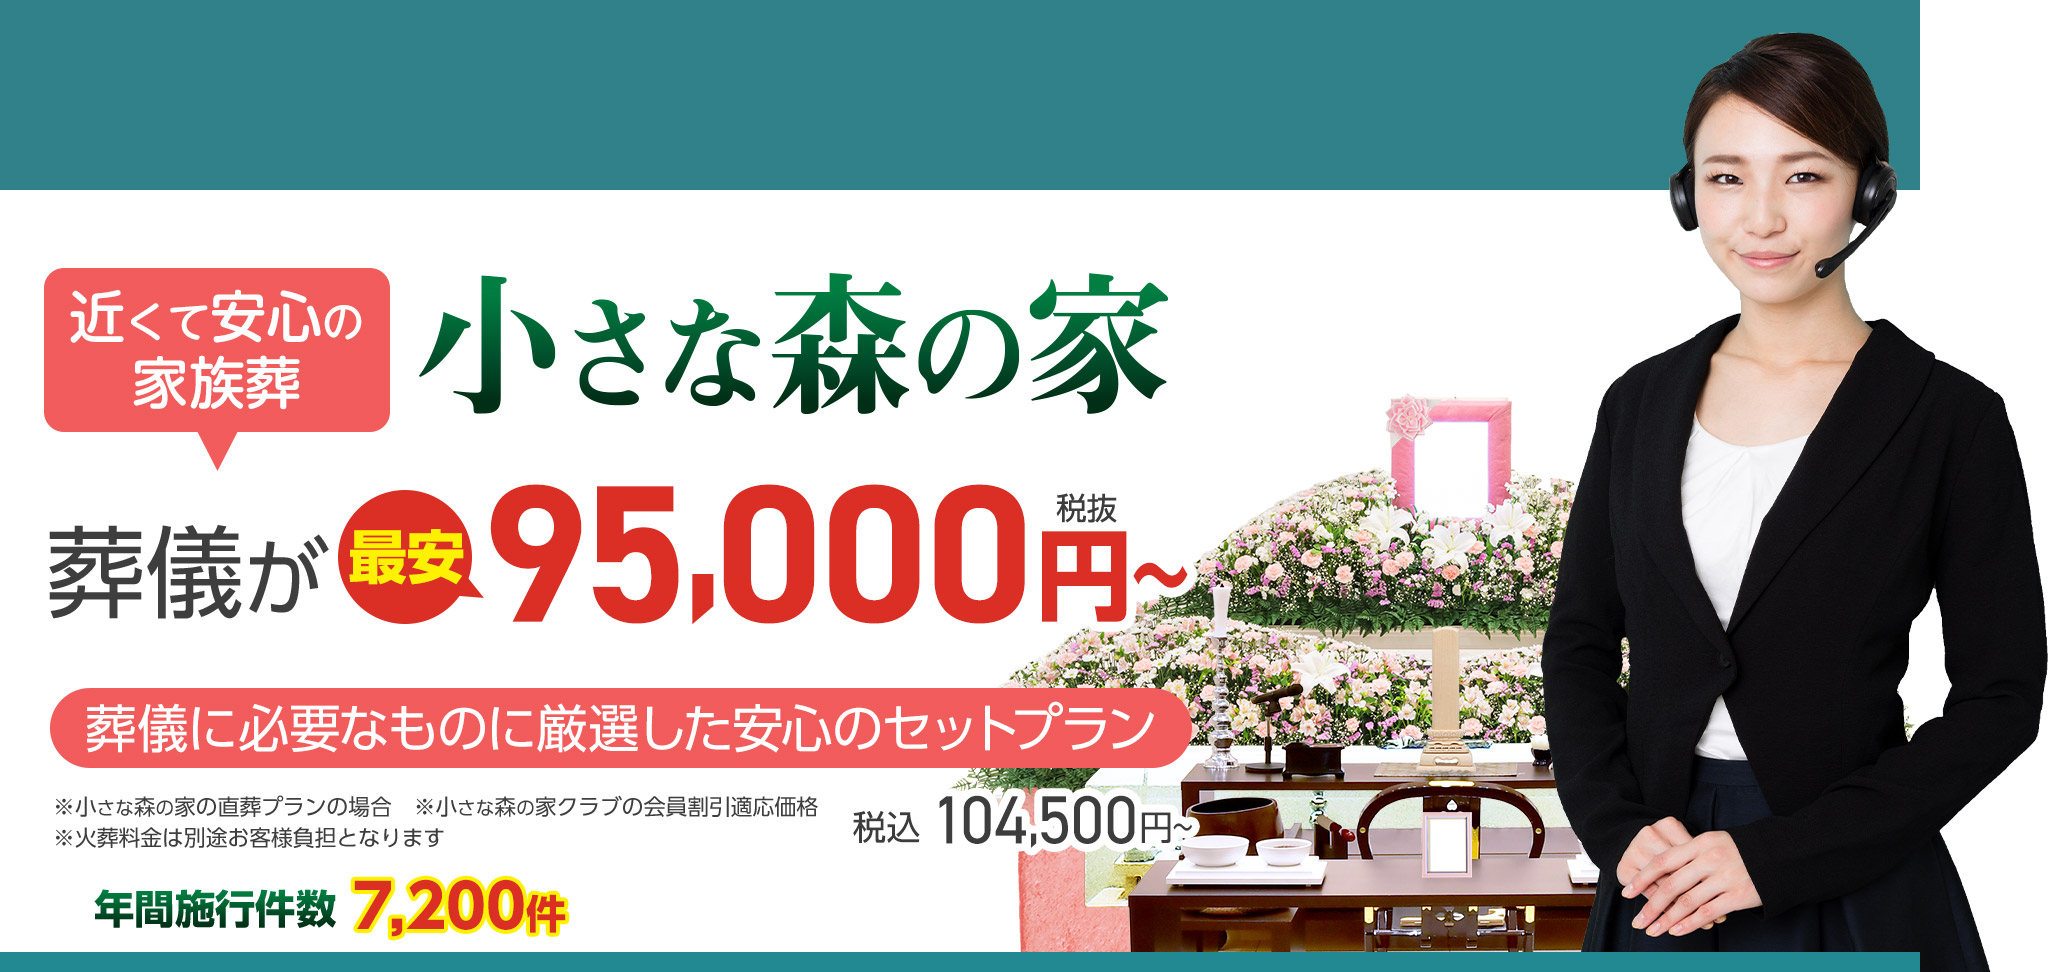 松戸市で家族葬をお探しなら小さな森の家 近くて安心の葬儀・家族葬がWEB限定税抜95,000円